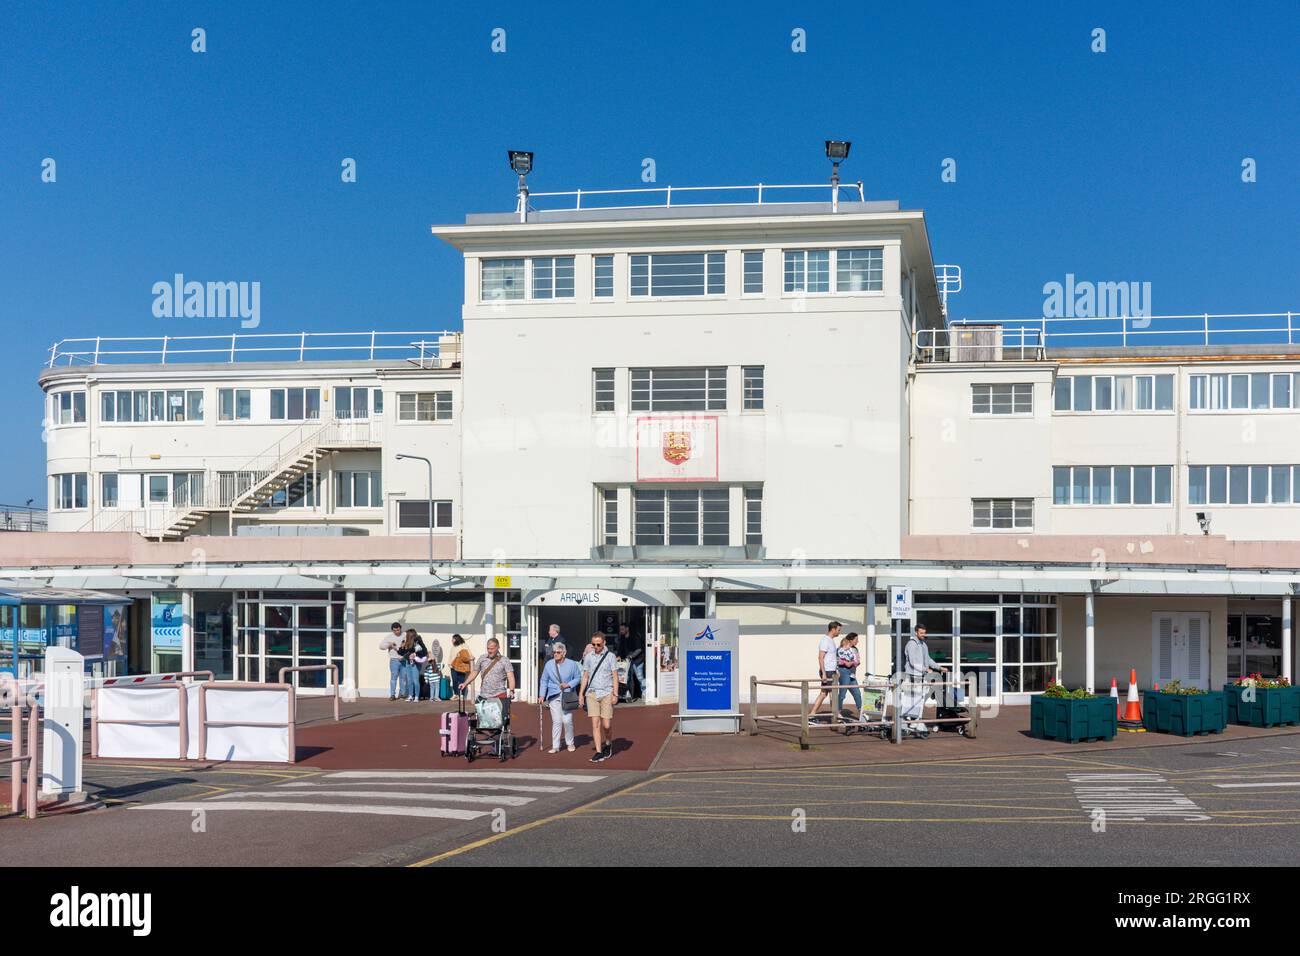 L'ancien terminal de l'aéroport international de Jersey, St Peter, Jersey, îles Anglo-Normandes Banque D'Images